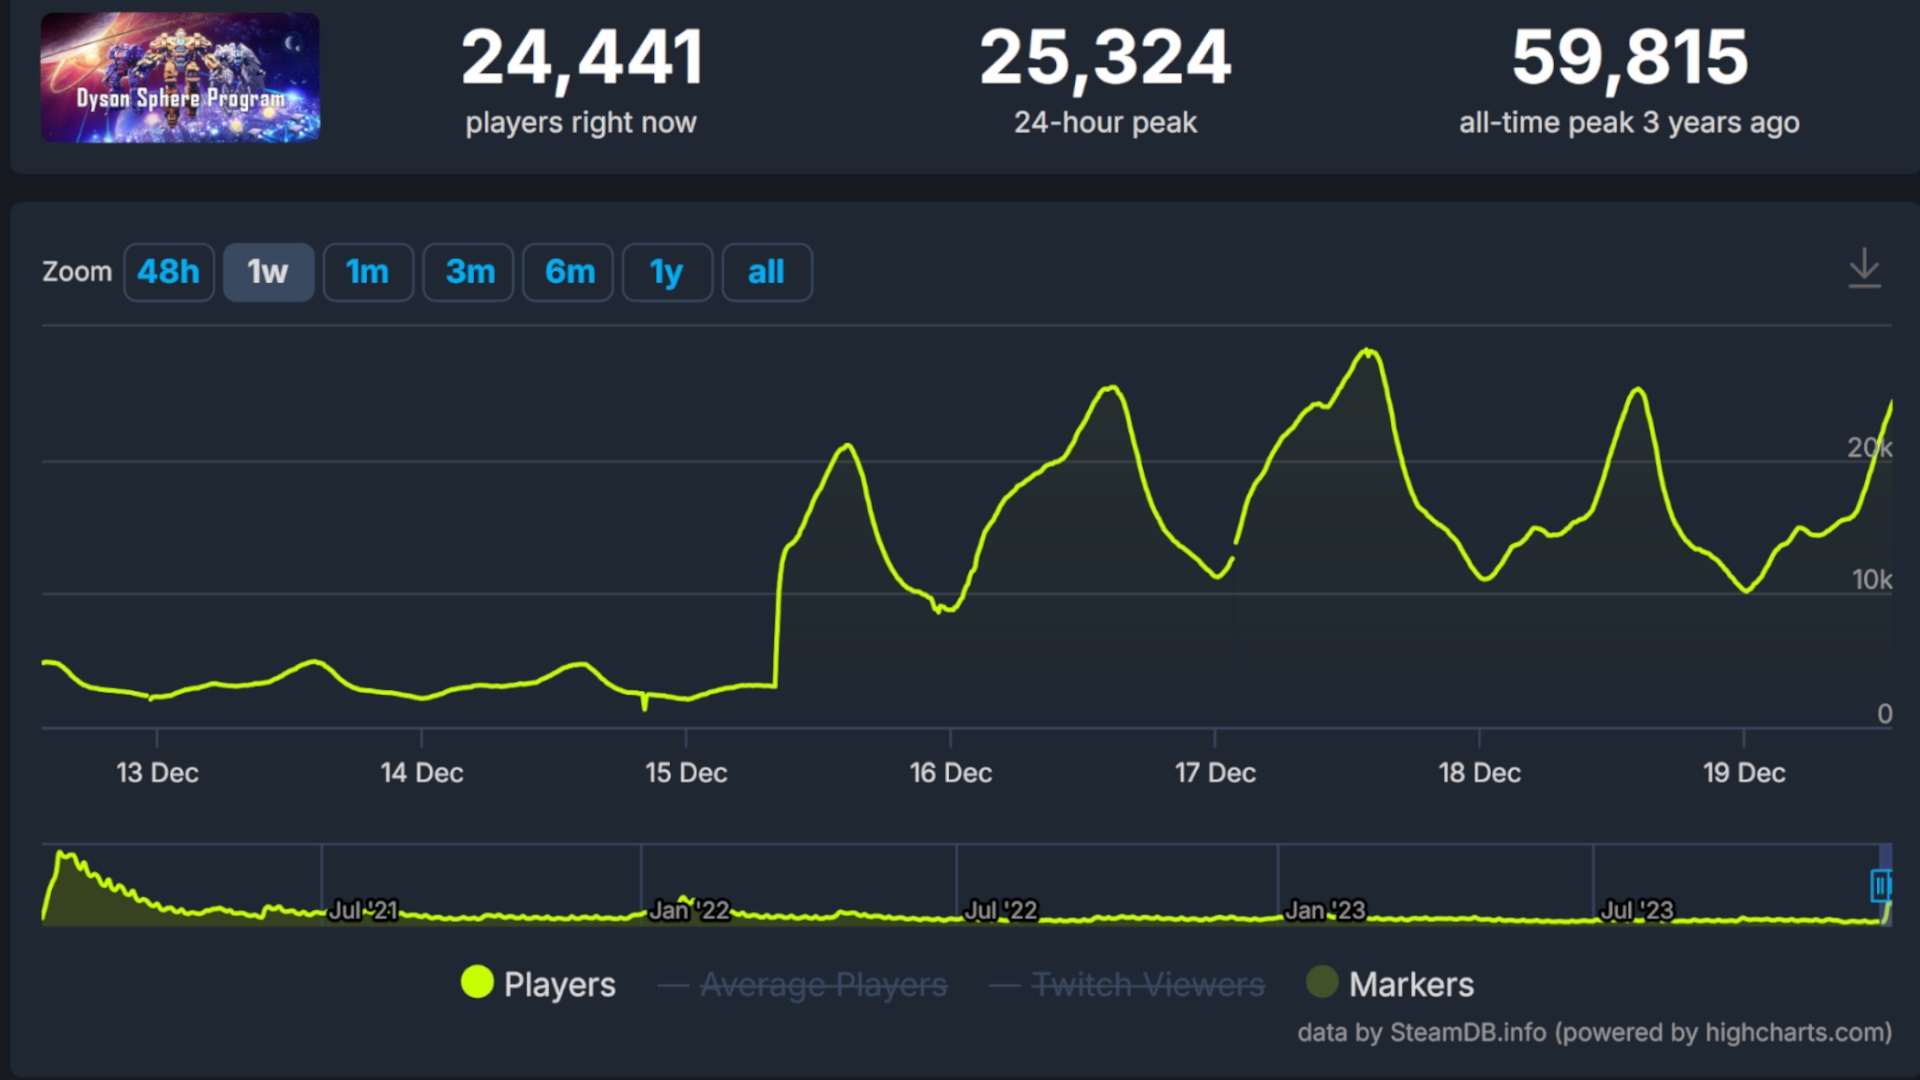 (La patch è attiva e i giocatori ne sono grati. Dal 15 dicembre, il programma Dyson Sphere sta vivendo una nuova ondata di popolarità. Fonte: steamdb)